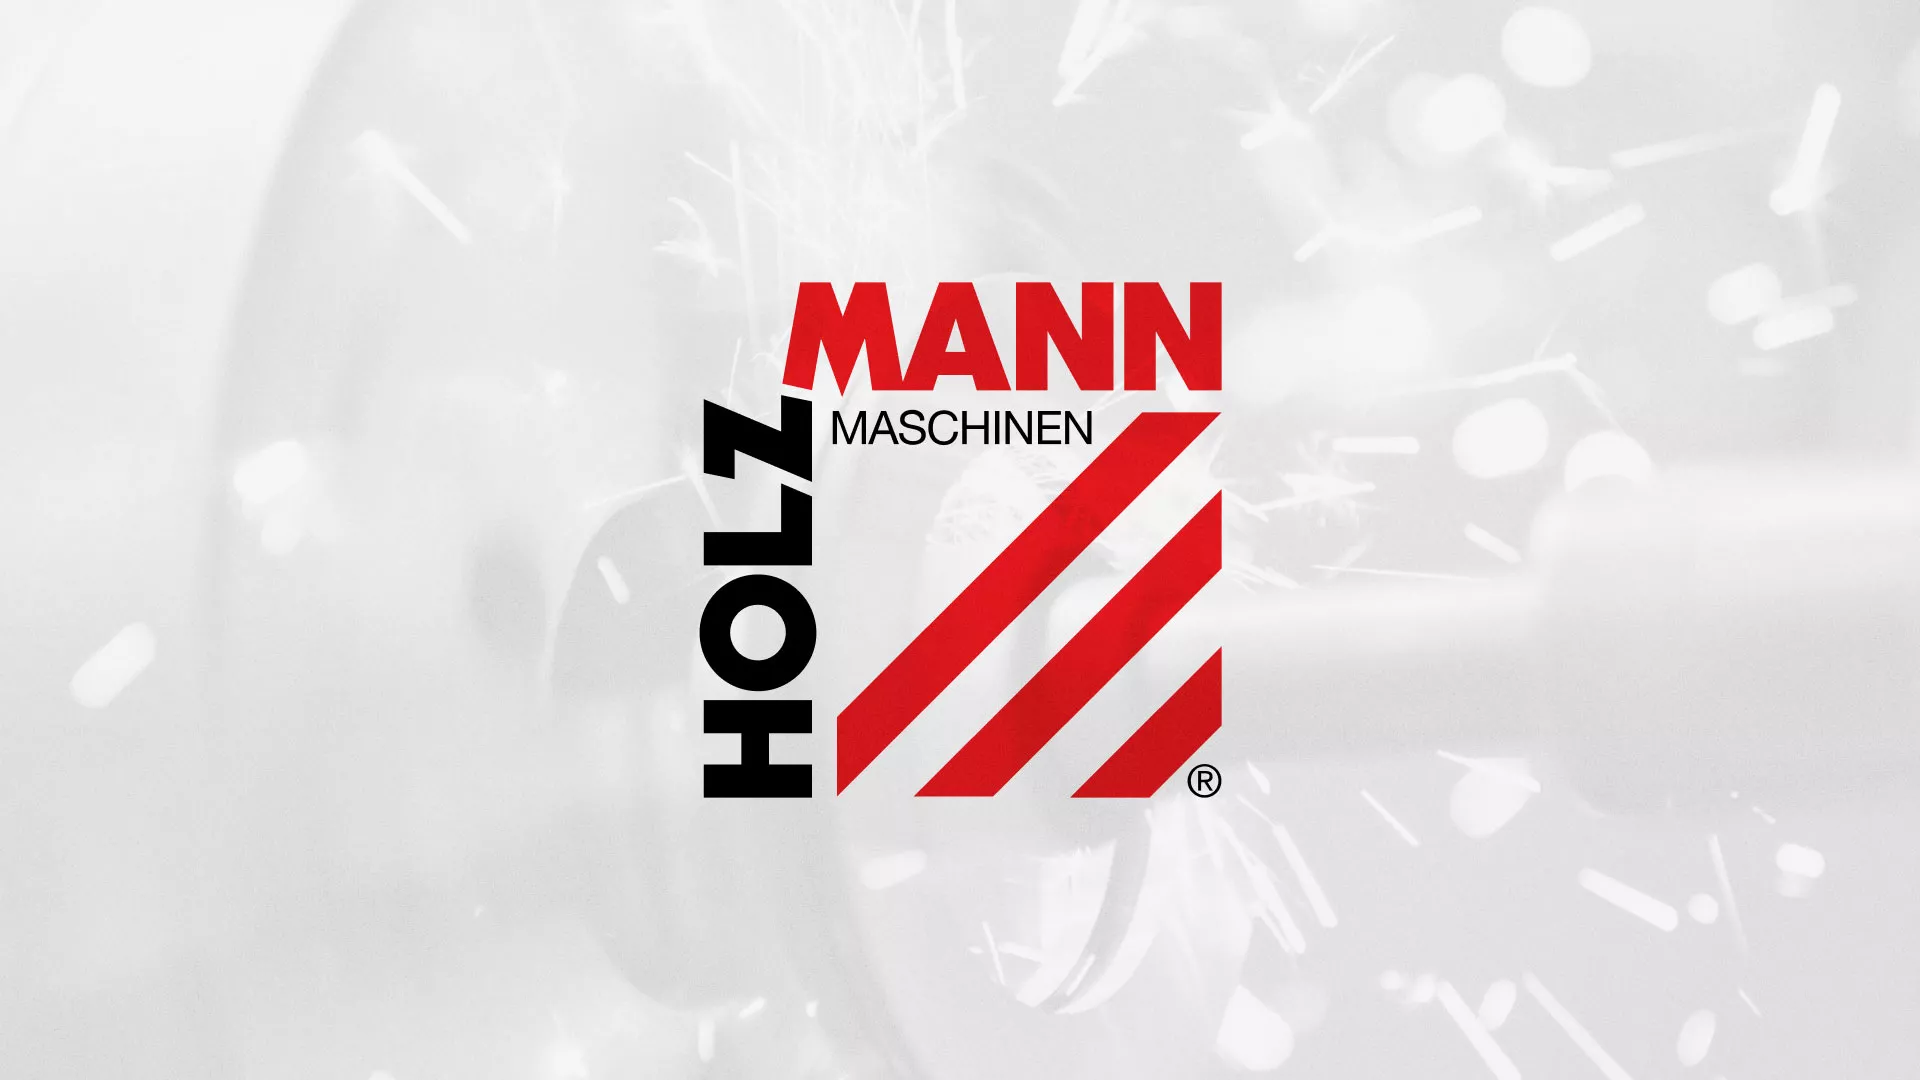 Создание сайта компании «HOLZMANN Maschinen GmbH» в Судогде